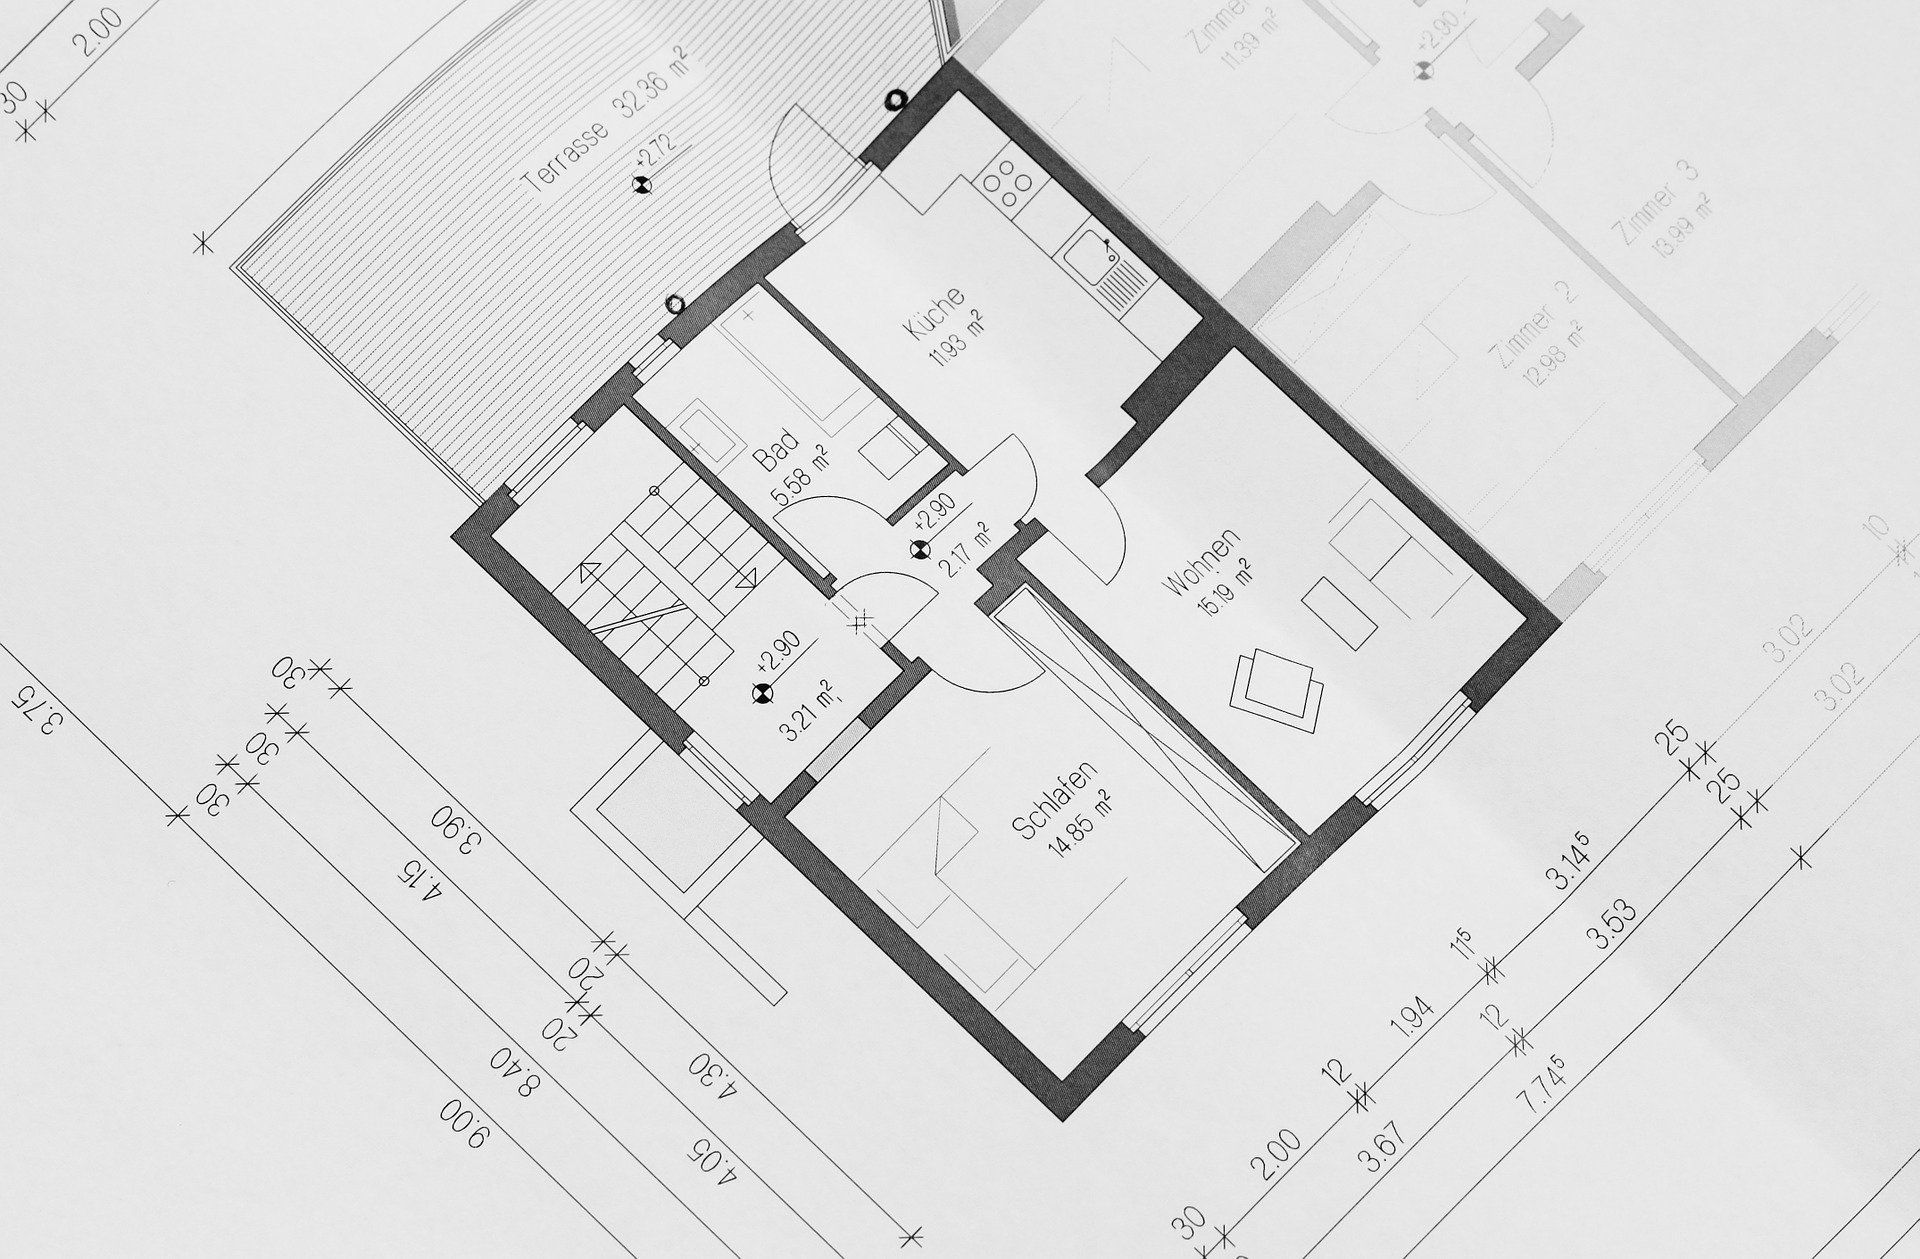 Floor plan diagrams